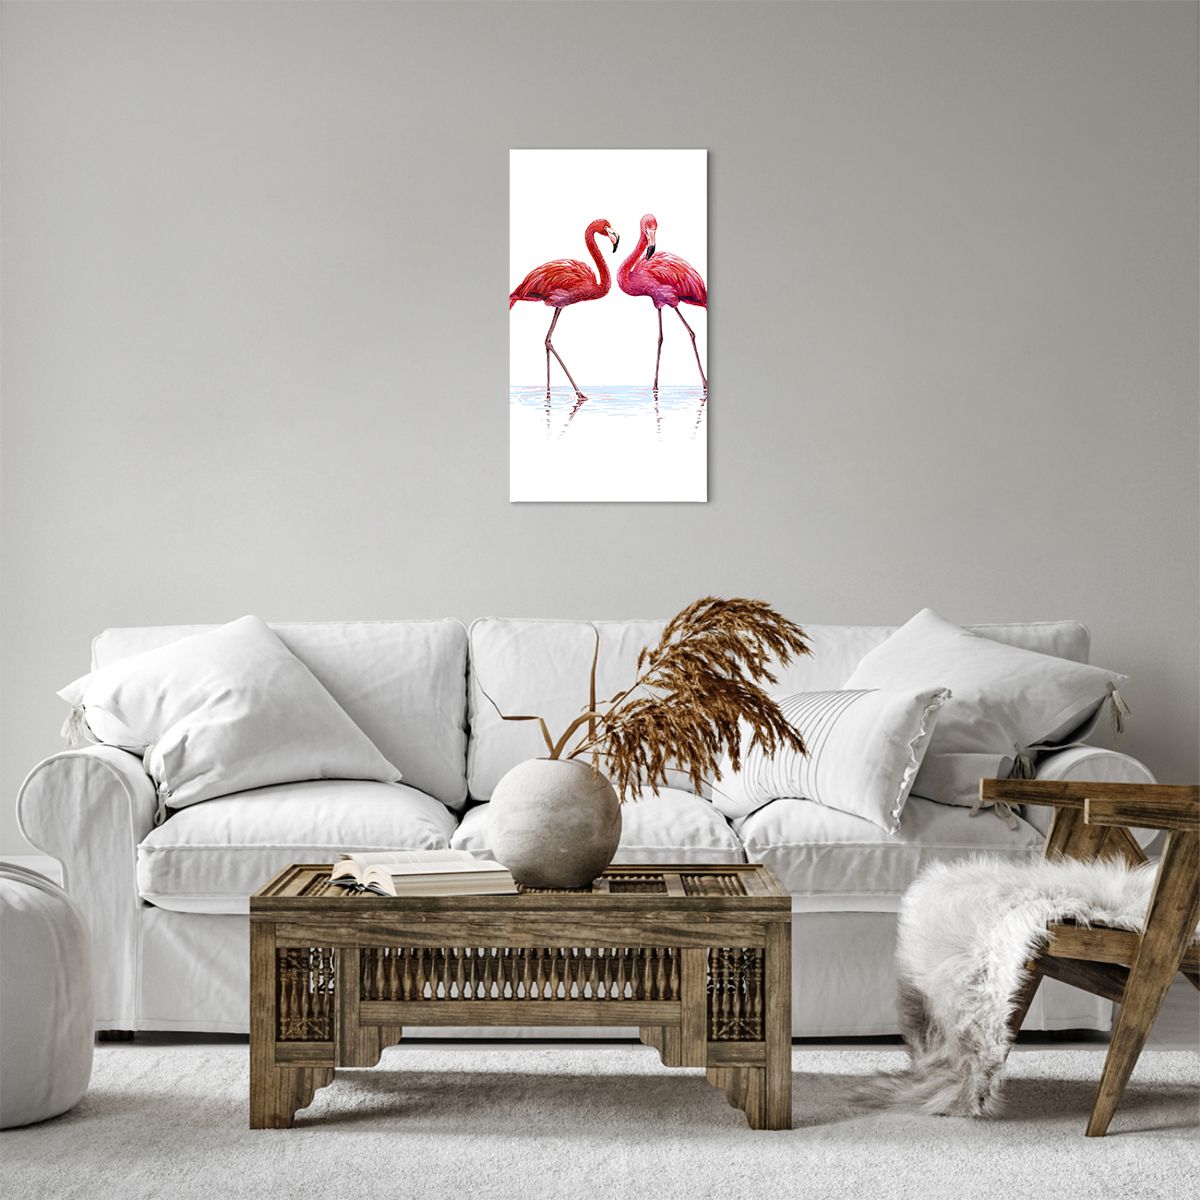 Obrazy na płótnie Flamingi, Obrazy na płótnie Ptaki, Obrazy na płótnie Sztuka, Obrazy na płótnie Zwierzęta, Obrazy na płótnie Brazylia